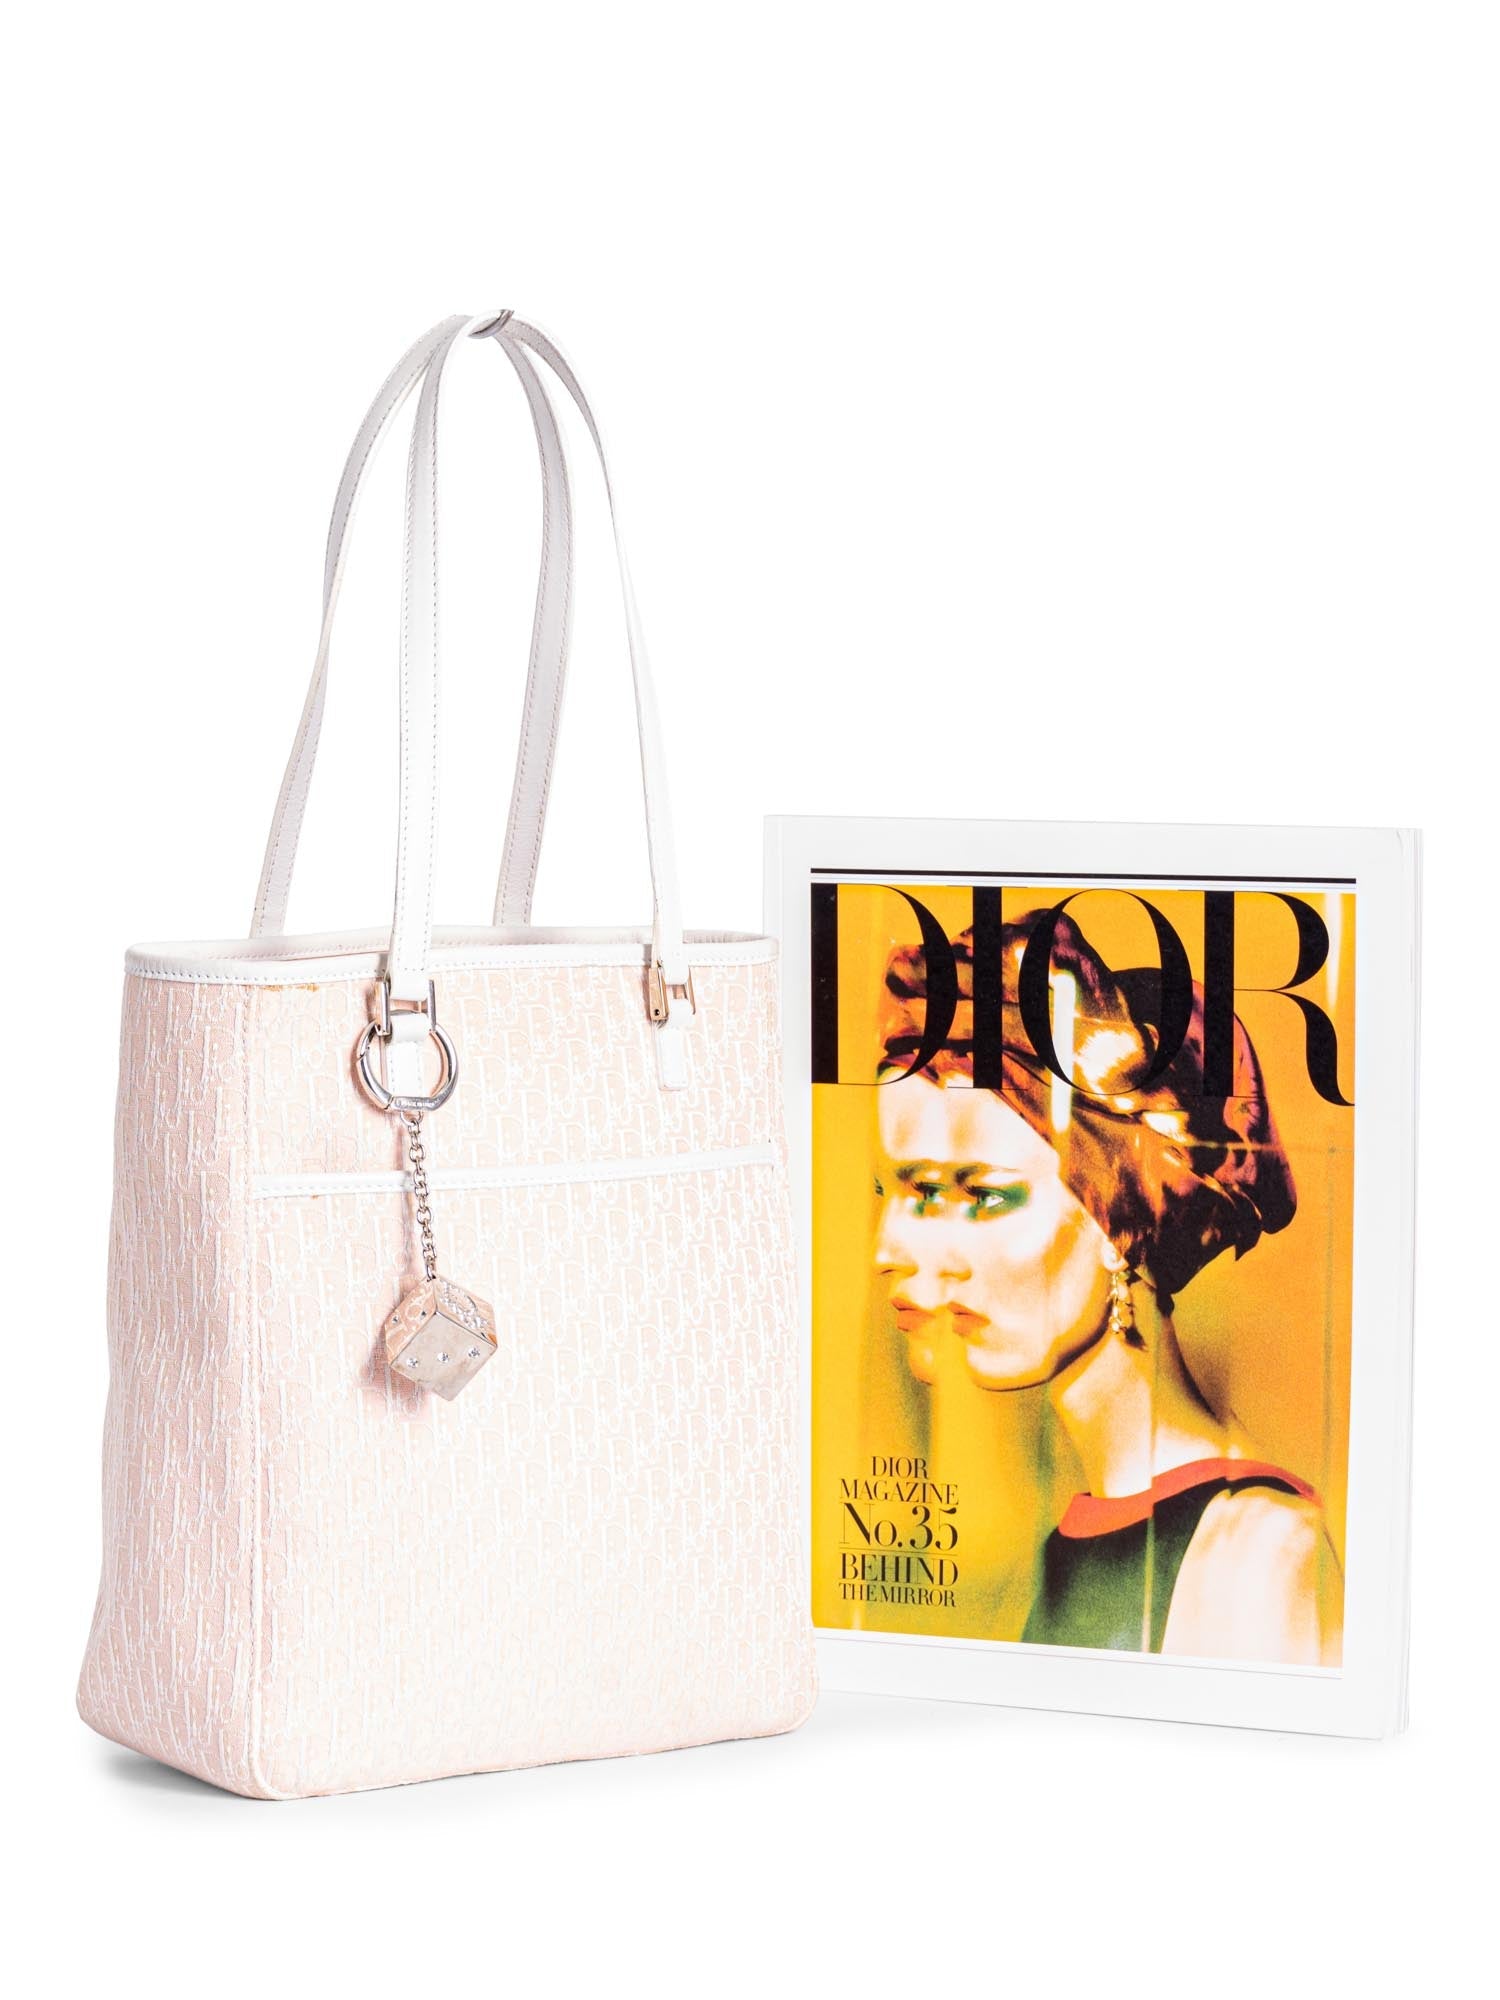 Dior, Bags, Authentic Christian Dior Speedy Handbag